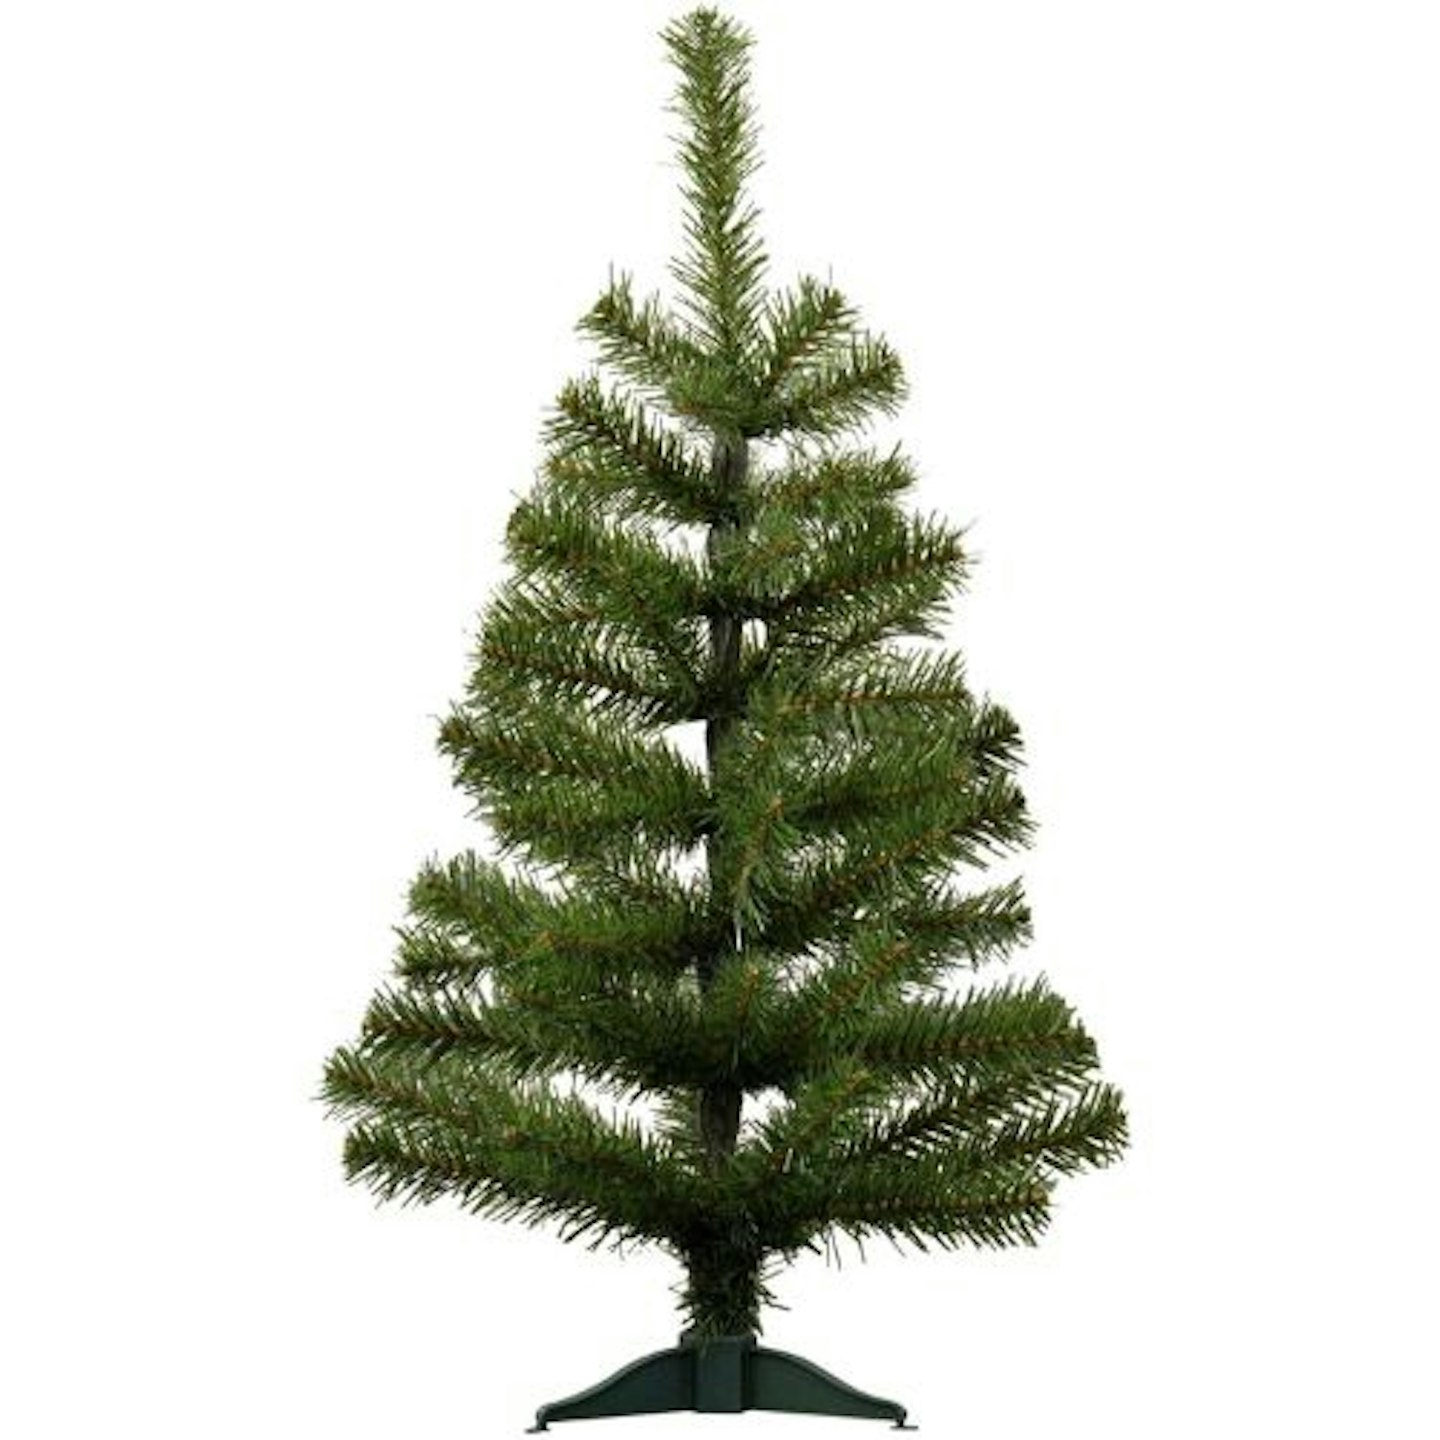 Best children's Christmas tree Green Pine Indoor Xmas Tree